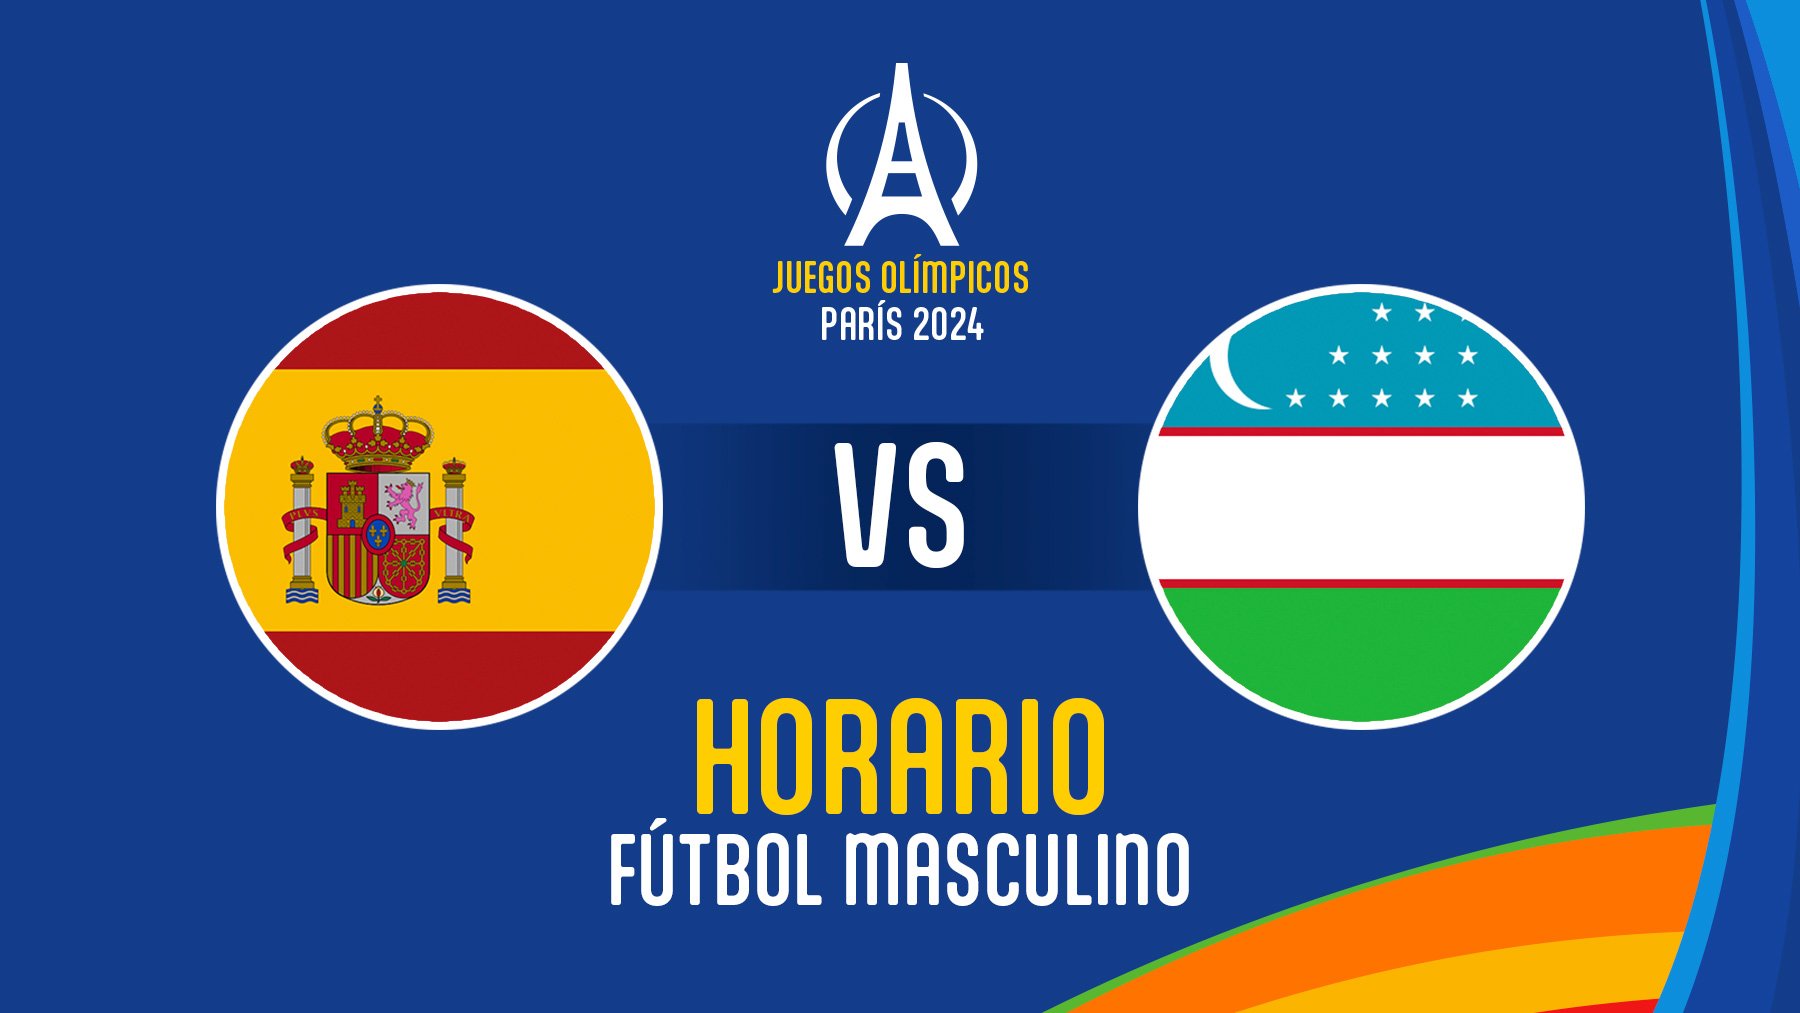 Horario España – Uzbekistán: ver gratis en directo el partido de fútbol de los Juegos Olímpicos 2024.